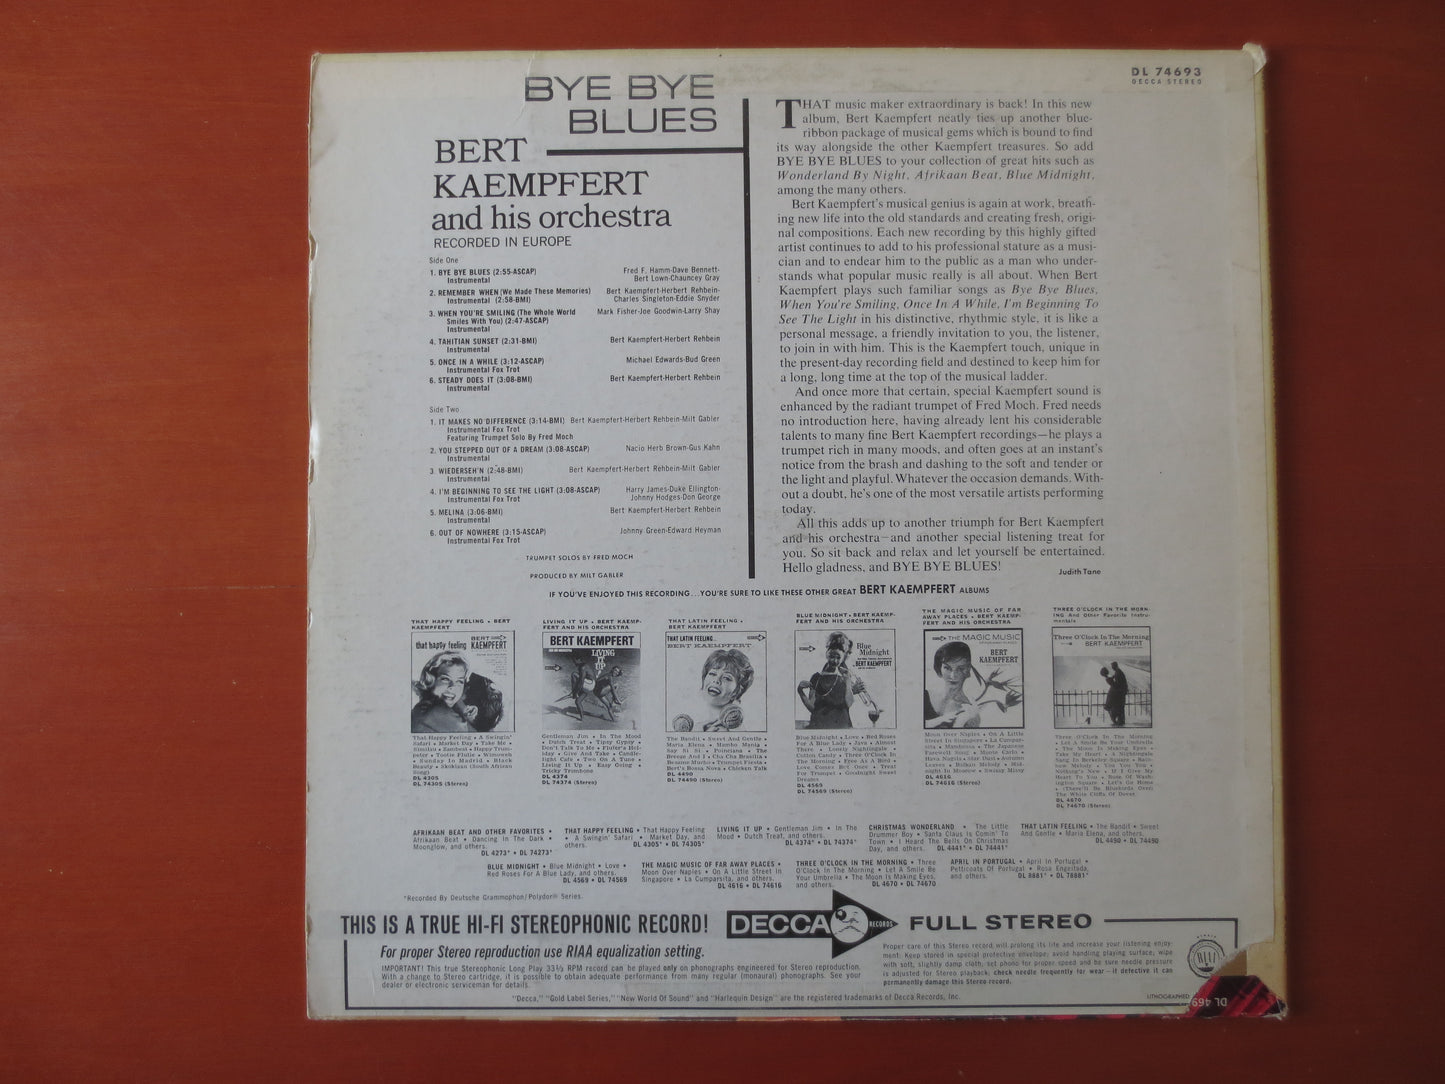 BERT KAEMPFERT, BYE Bye Blues, Bert Kaempfert Album, Jazz Records, Jazz Album, Bert Kaempfert Music, lps, 1965 Records